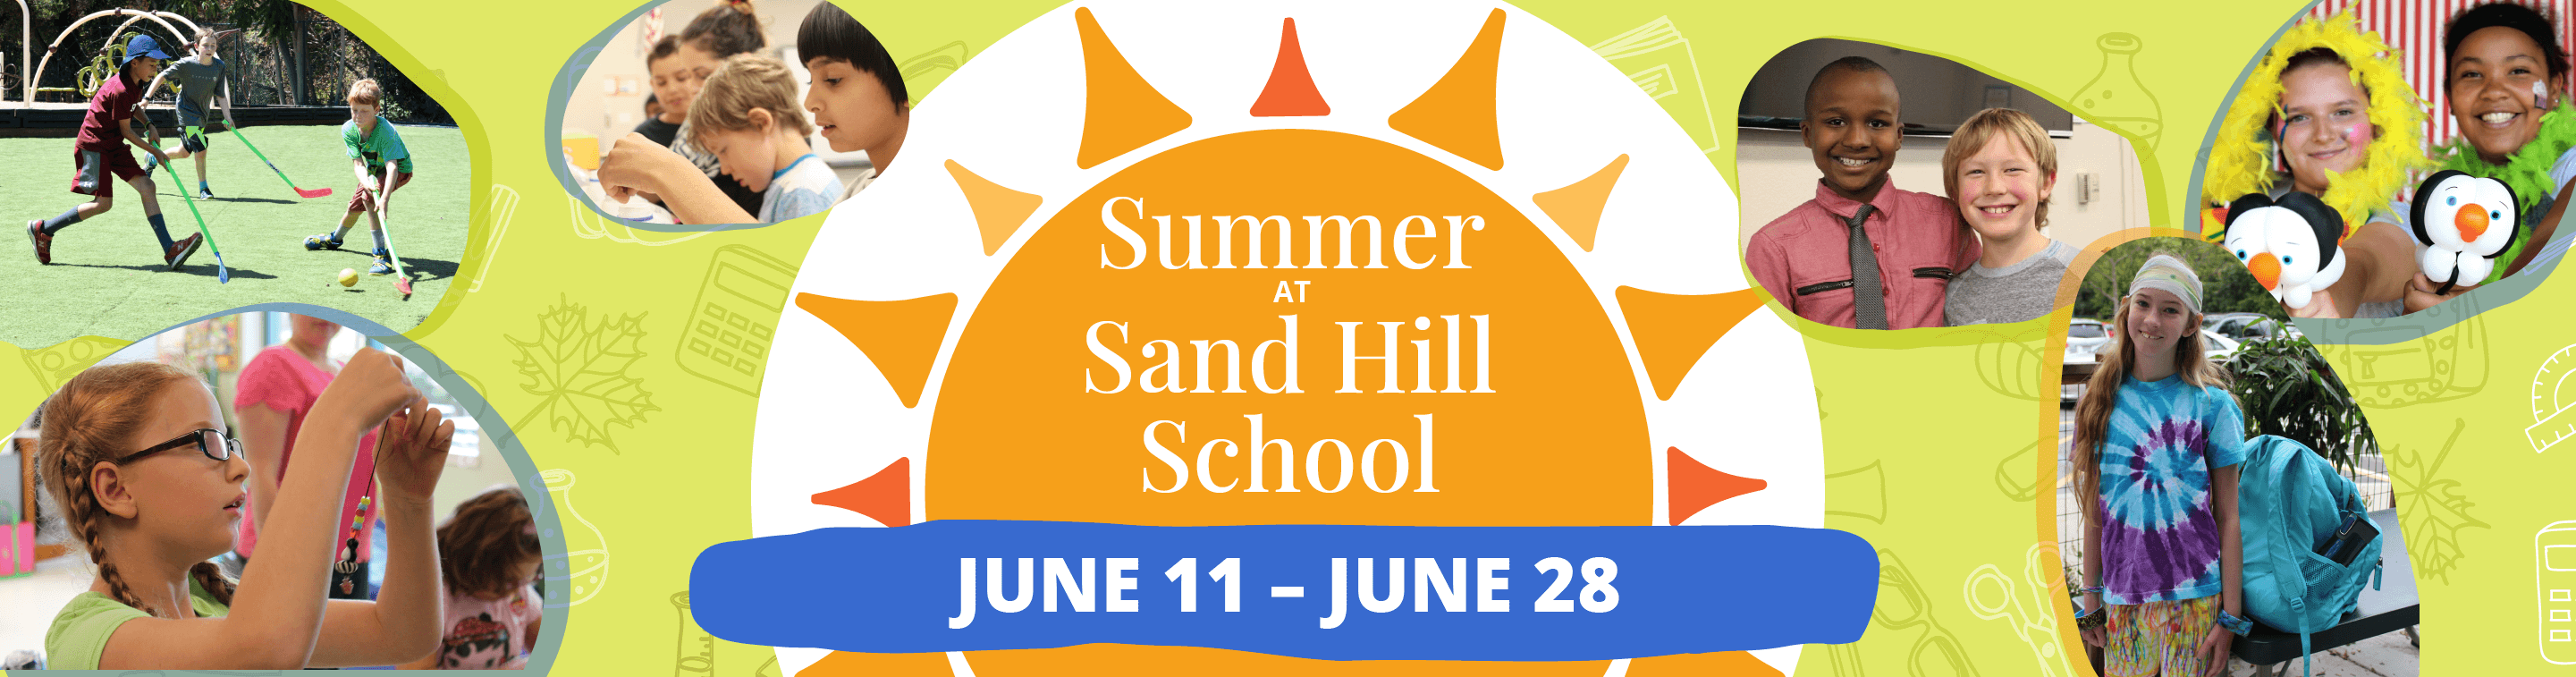 Summer at Sand Hill School. June 11 - June 28.